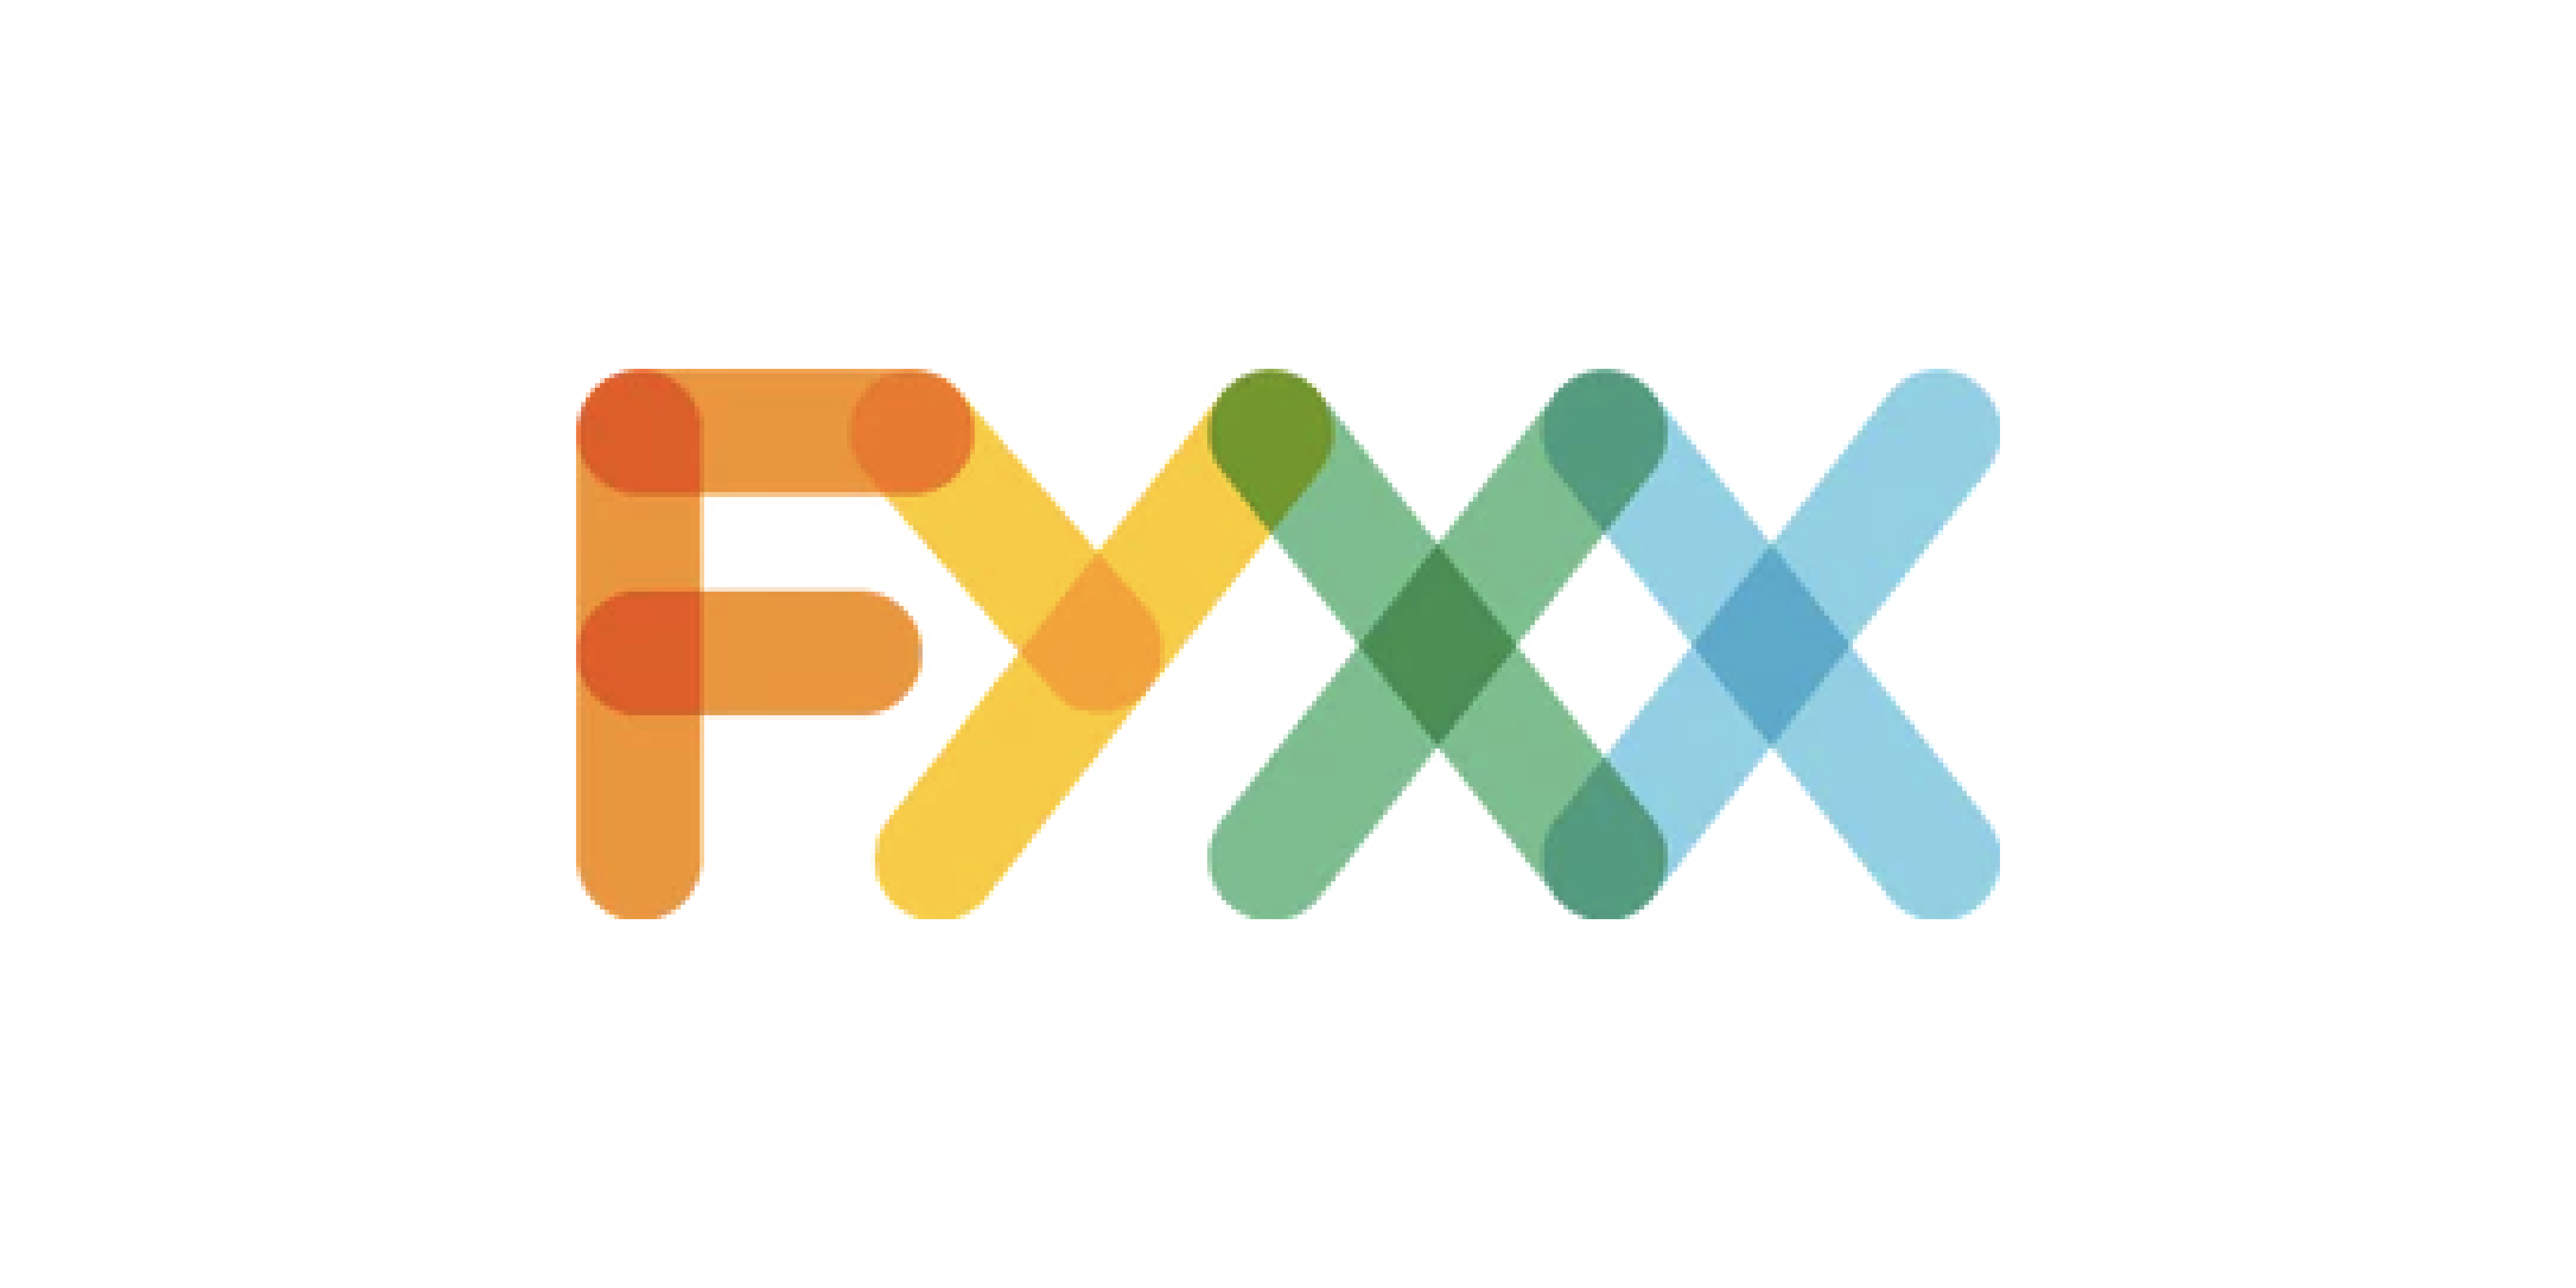 Fyxx